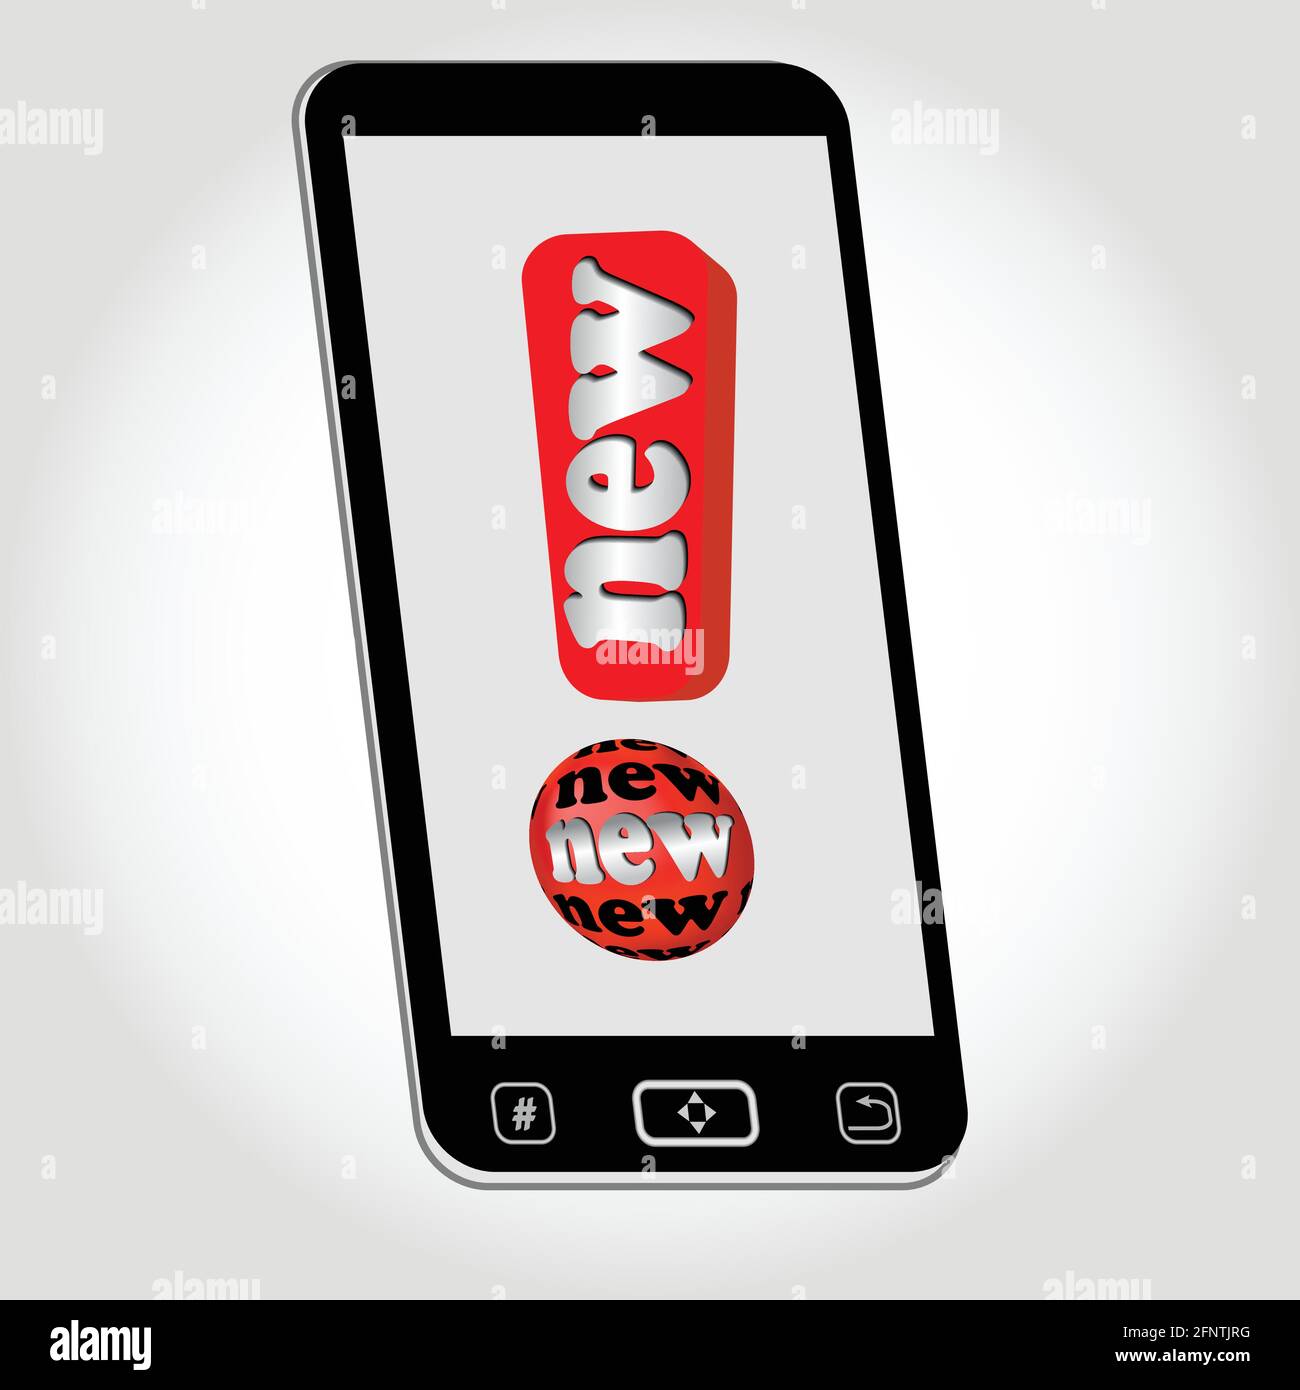 Smartphone - isoliertes Objekt mit Emblem Neu dargestellt als rotes Ausrufezeichen mit Aufschrift Neu. Bild auf hellgrauem Hintergrund mit Farbverlauf. V Stock Vektor